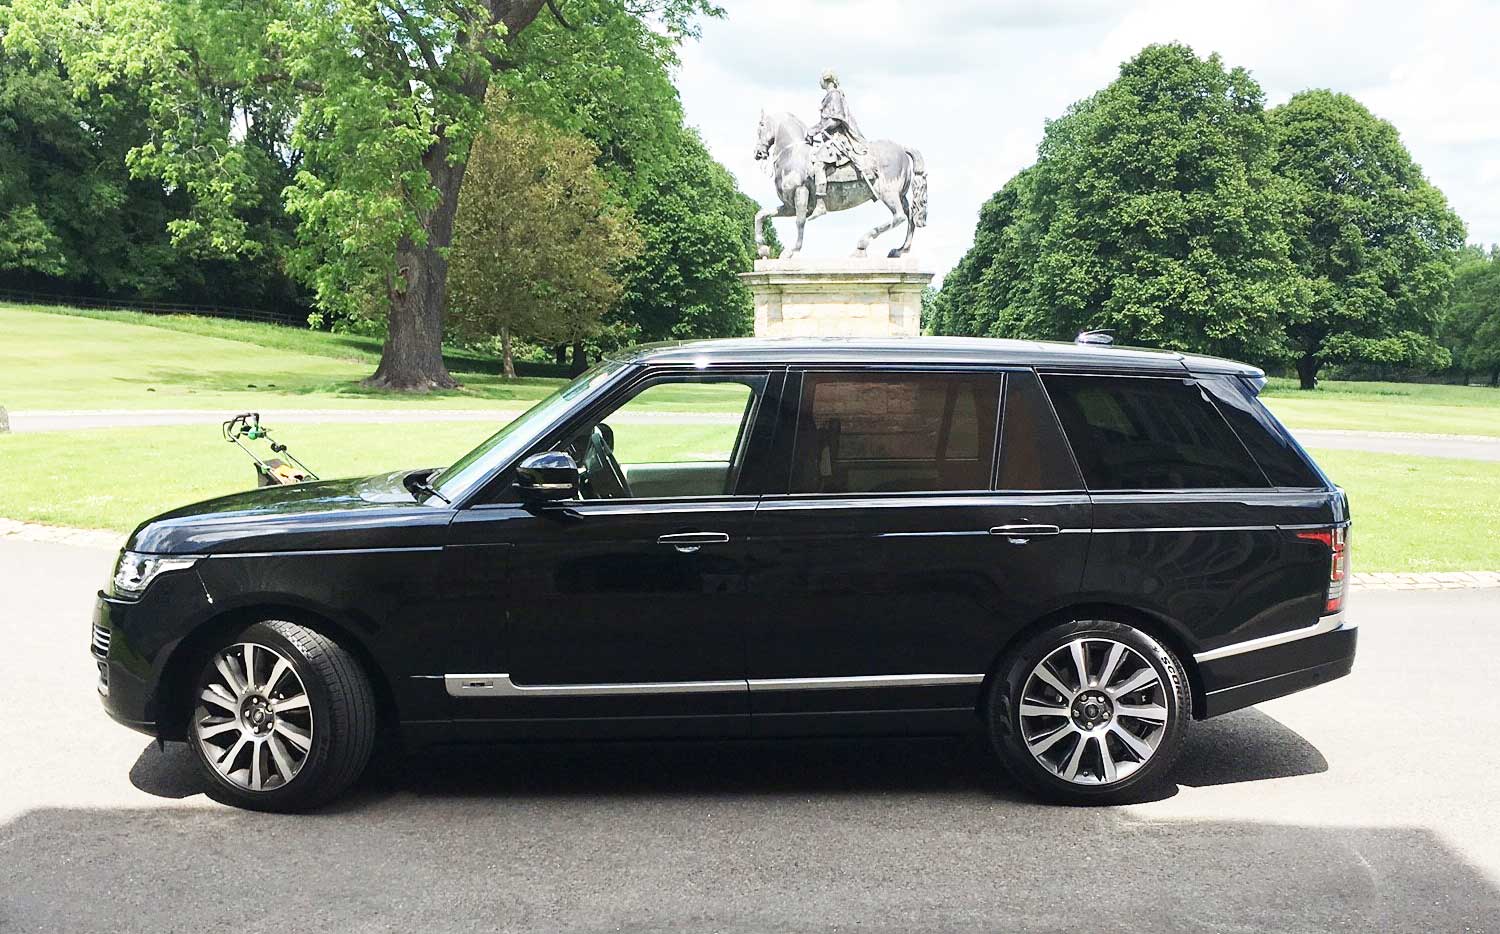 Range Rover Hybrid Chauffeur - Safe Luxury Travel - iChauffeur